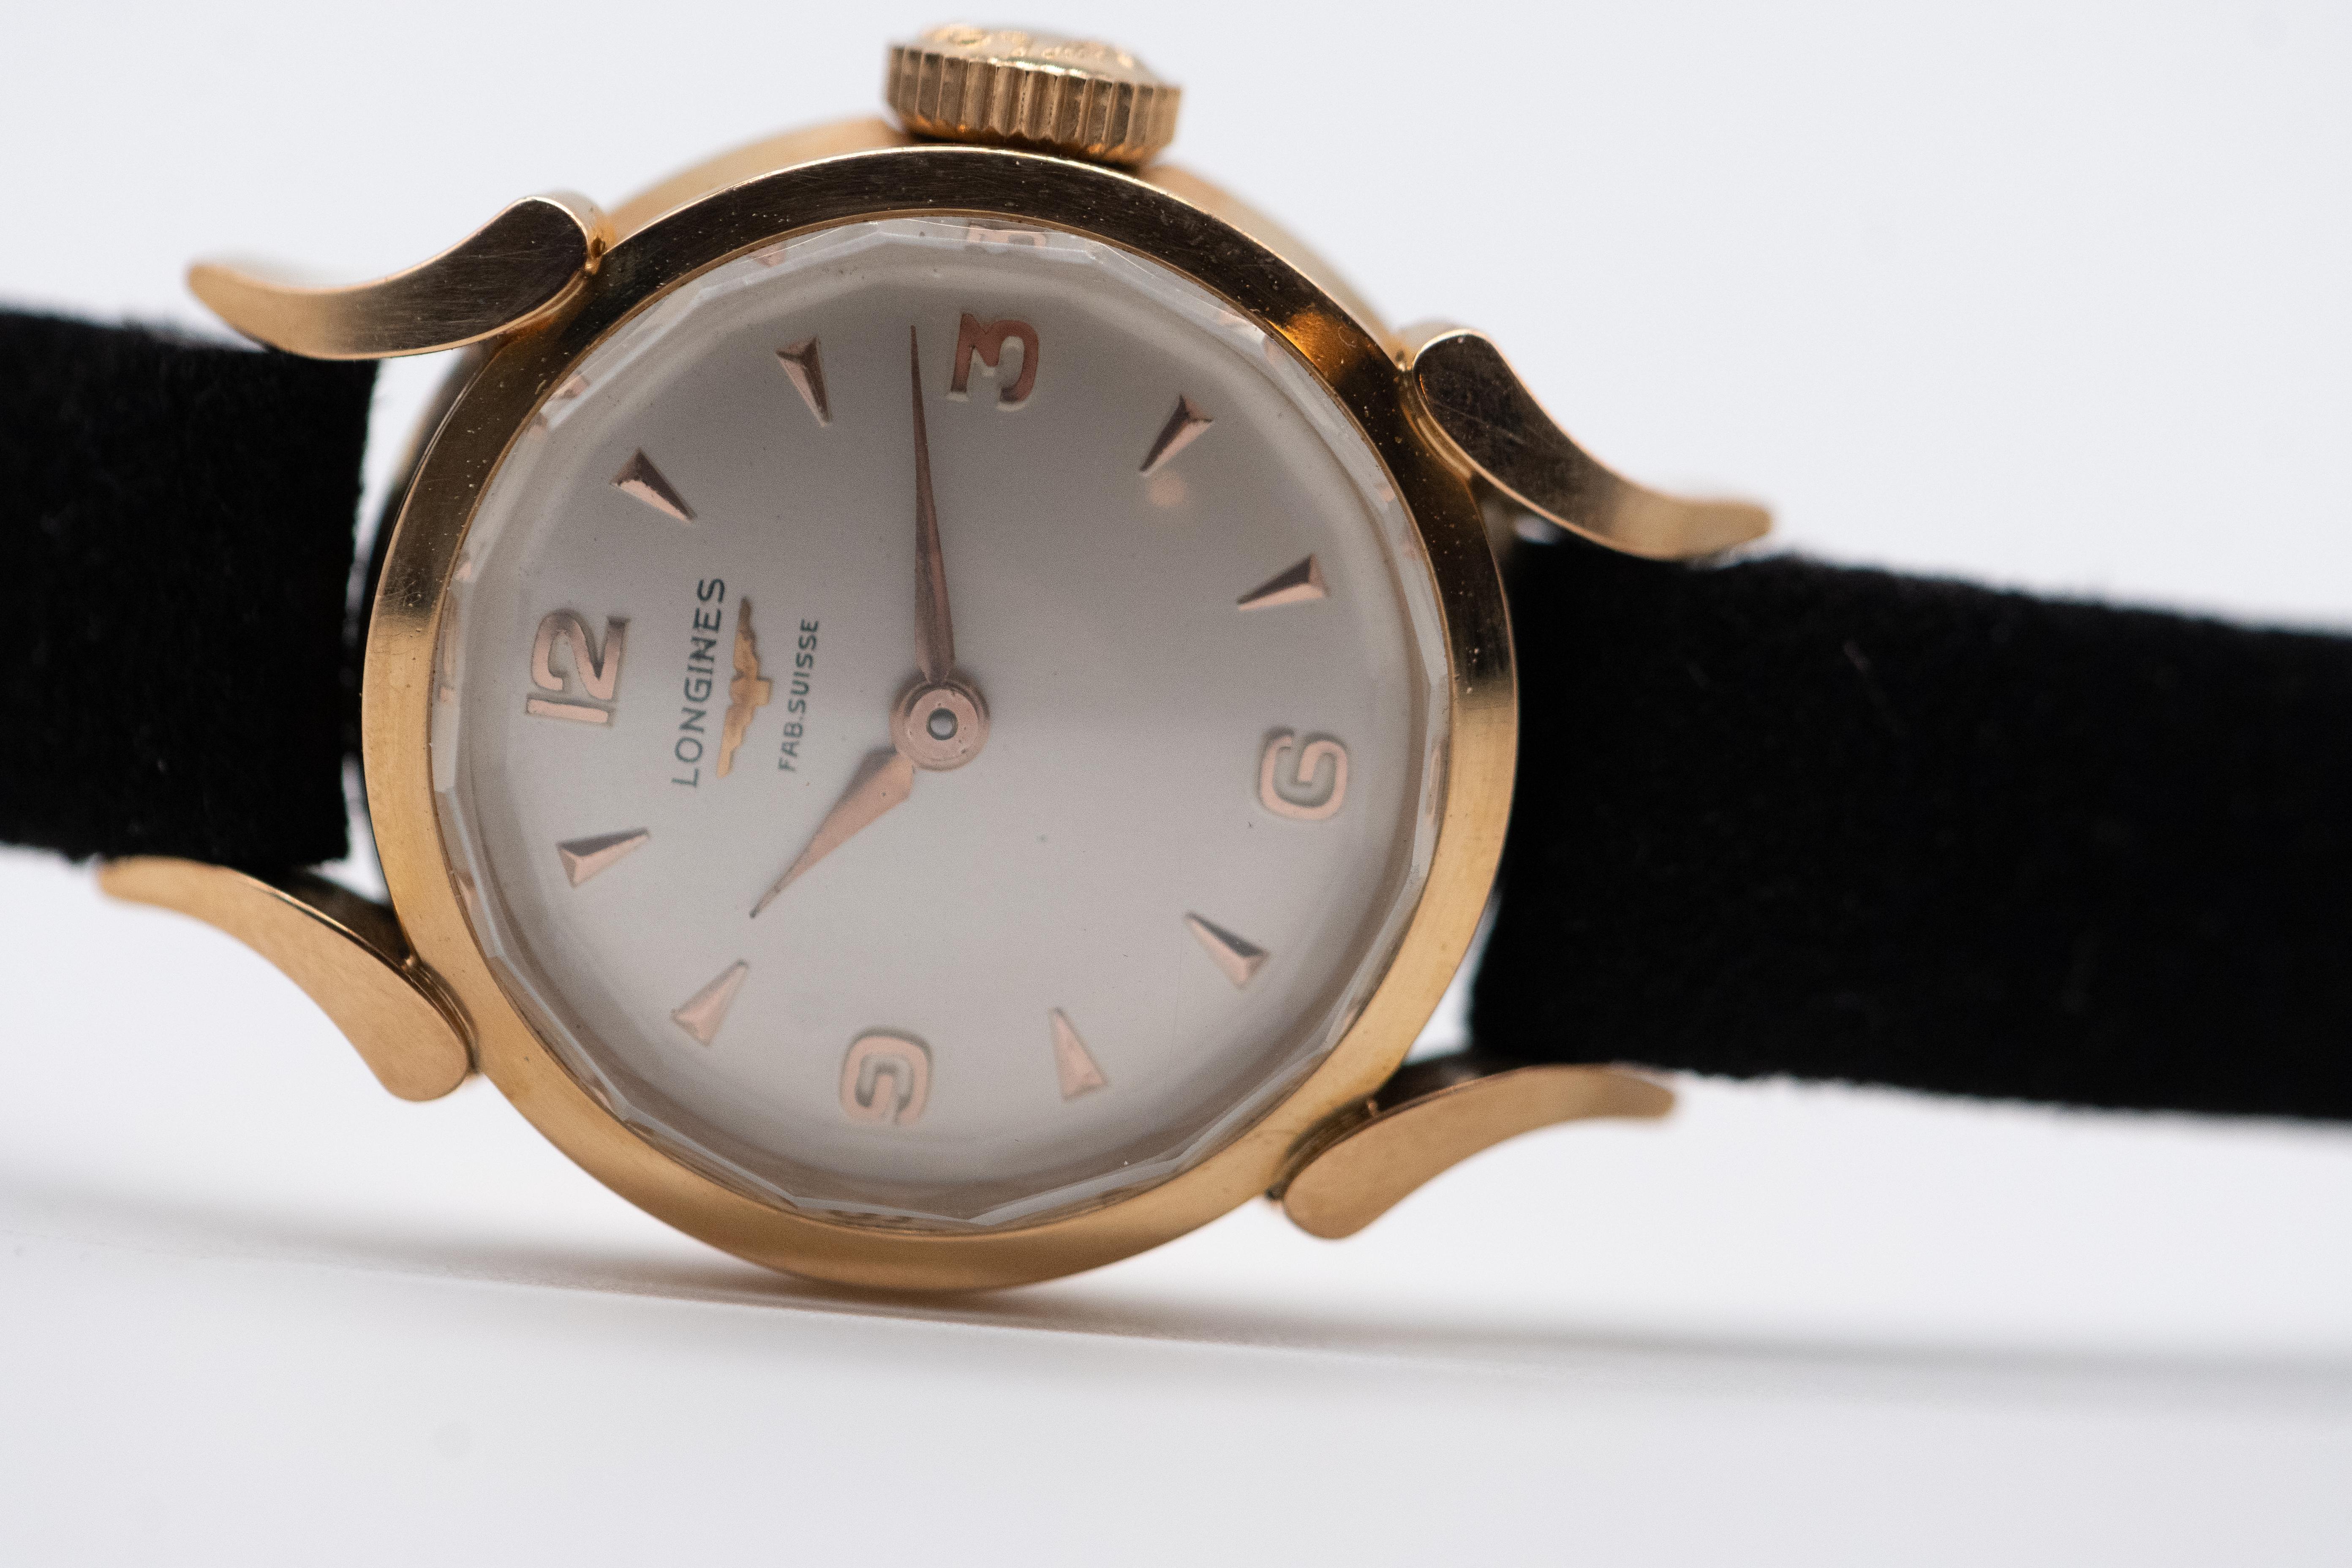 Découvrez notre montre Longines Ladies Watch, vintage mais jamais portée et avec son étiquette d'origine. Dotée d'un boîtier rond de 19 mm en or 18 carats, cette montre incarne le mariage parfait de la sophistication et de la discrétion. Le cadran